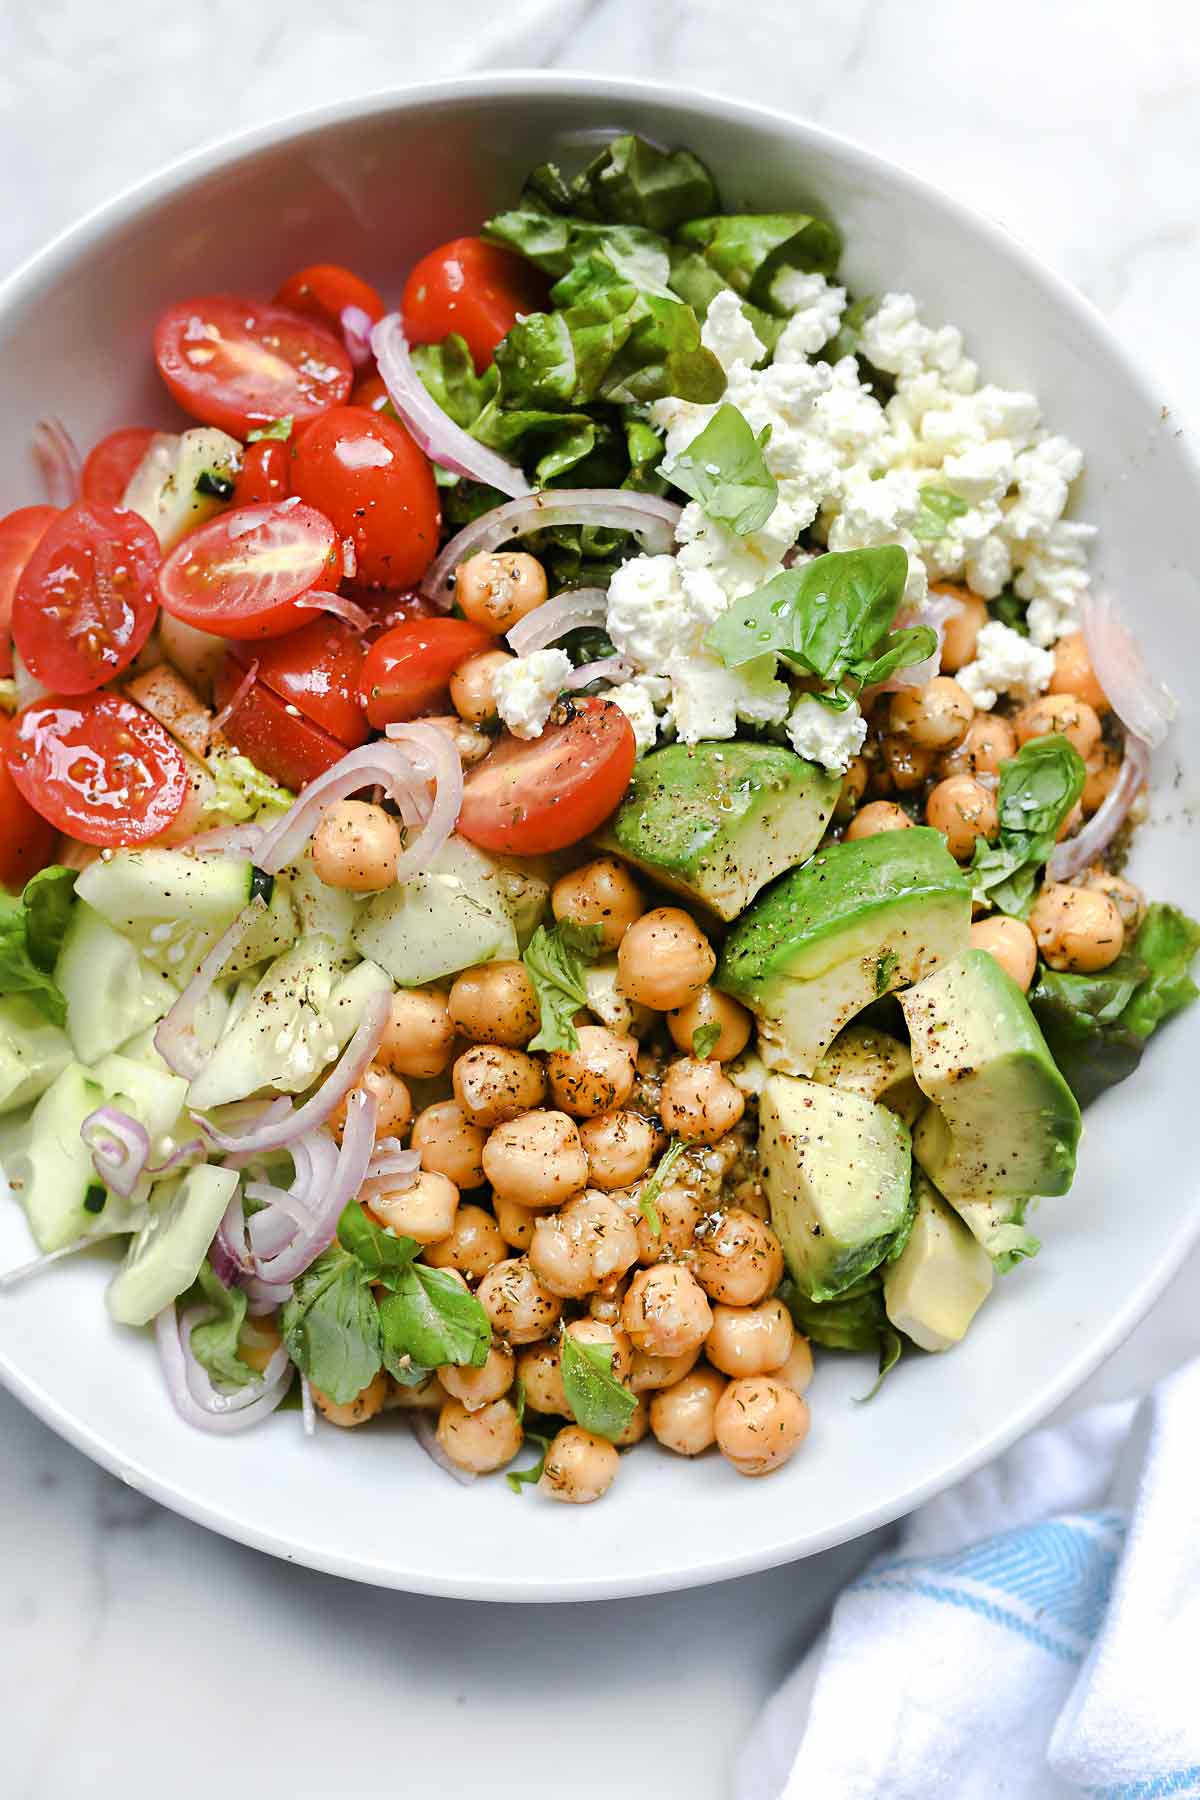 Salada verde crocante com grão de bico e abacate | foodiecrush.com #salad #avocado #recipes #lunch #chickpeas